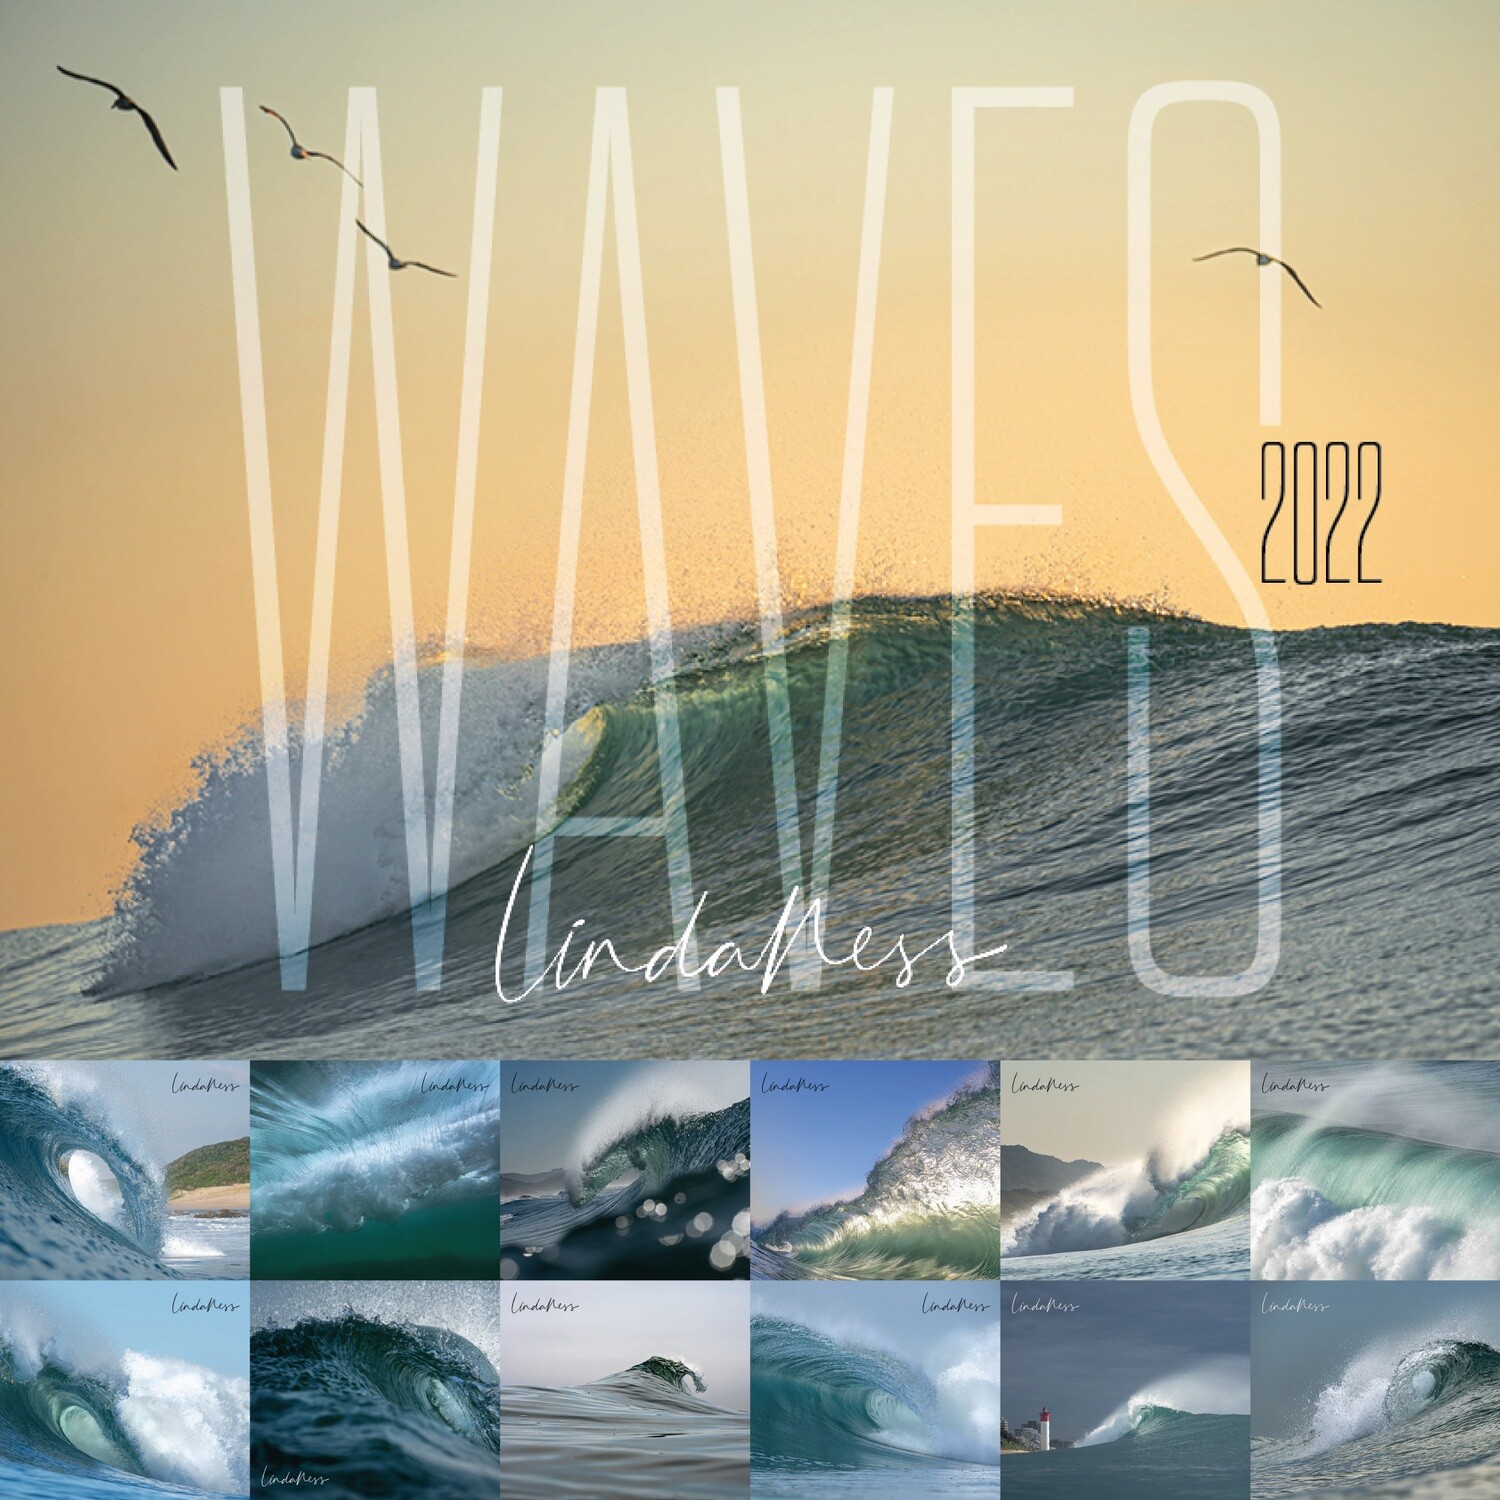 2022 Linda Ness WAVE calendar